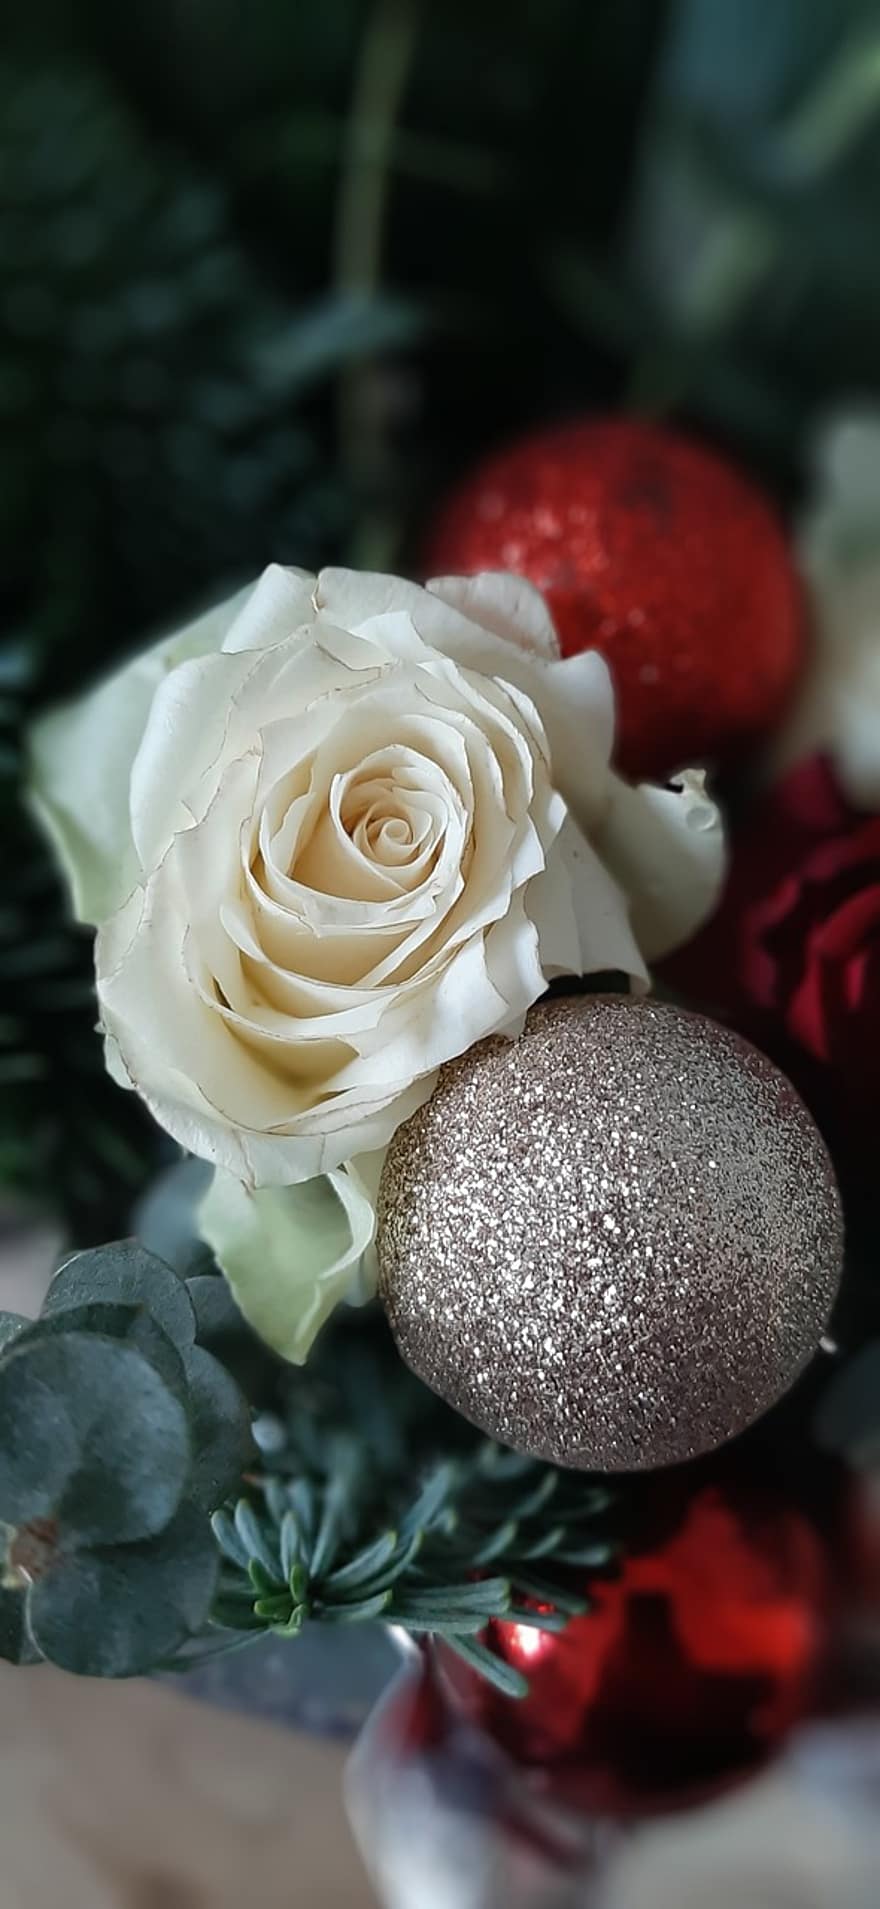 Rose, Weihnachten, Weihnachtskugel, Weihnachtsstück, Blume, Blumen arrangement, Geschenk